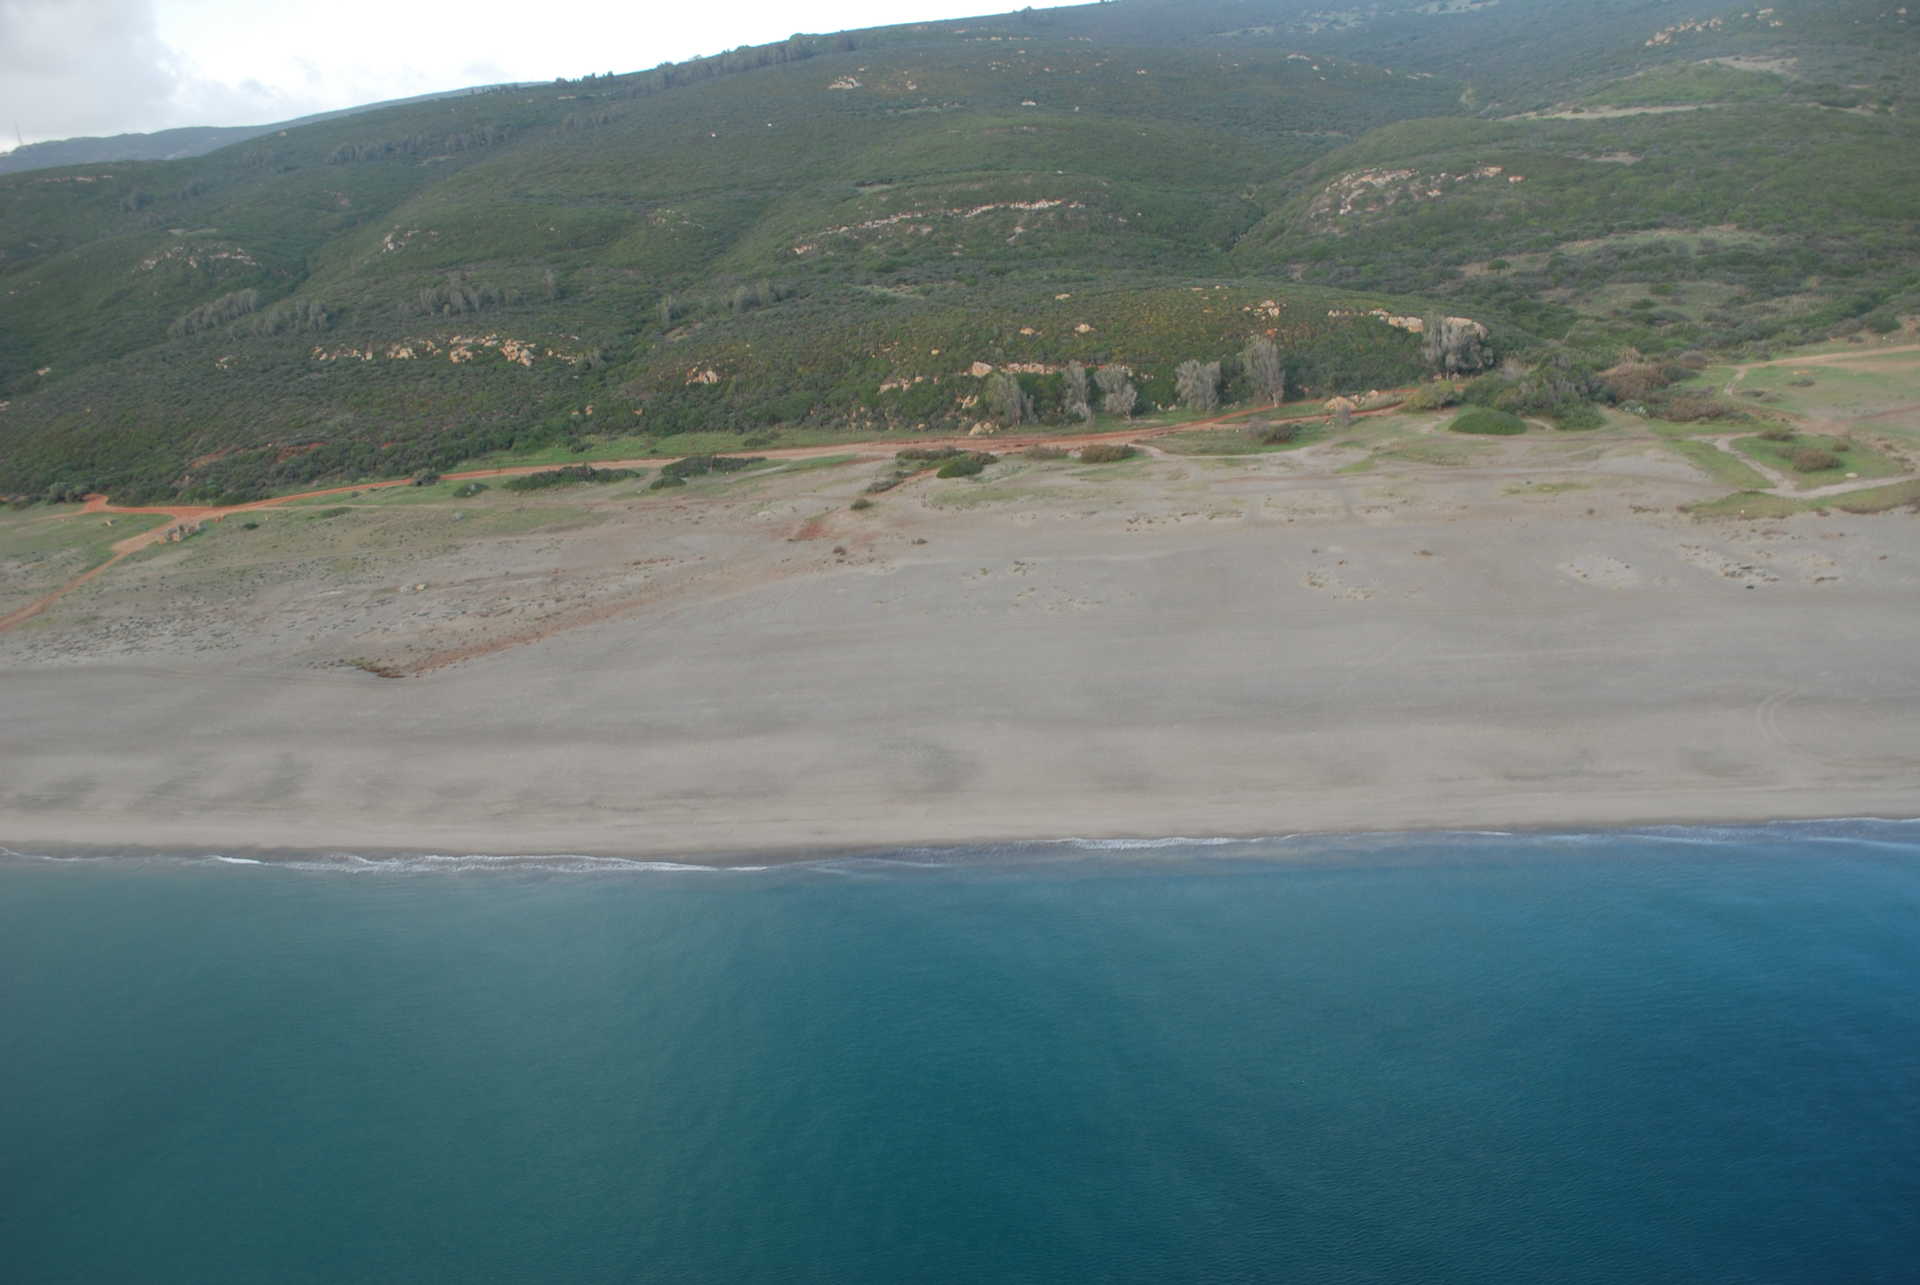 La Santa Clara beach